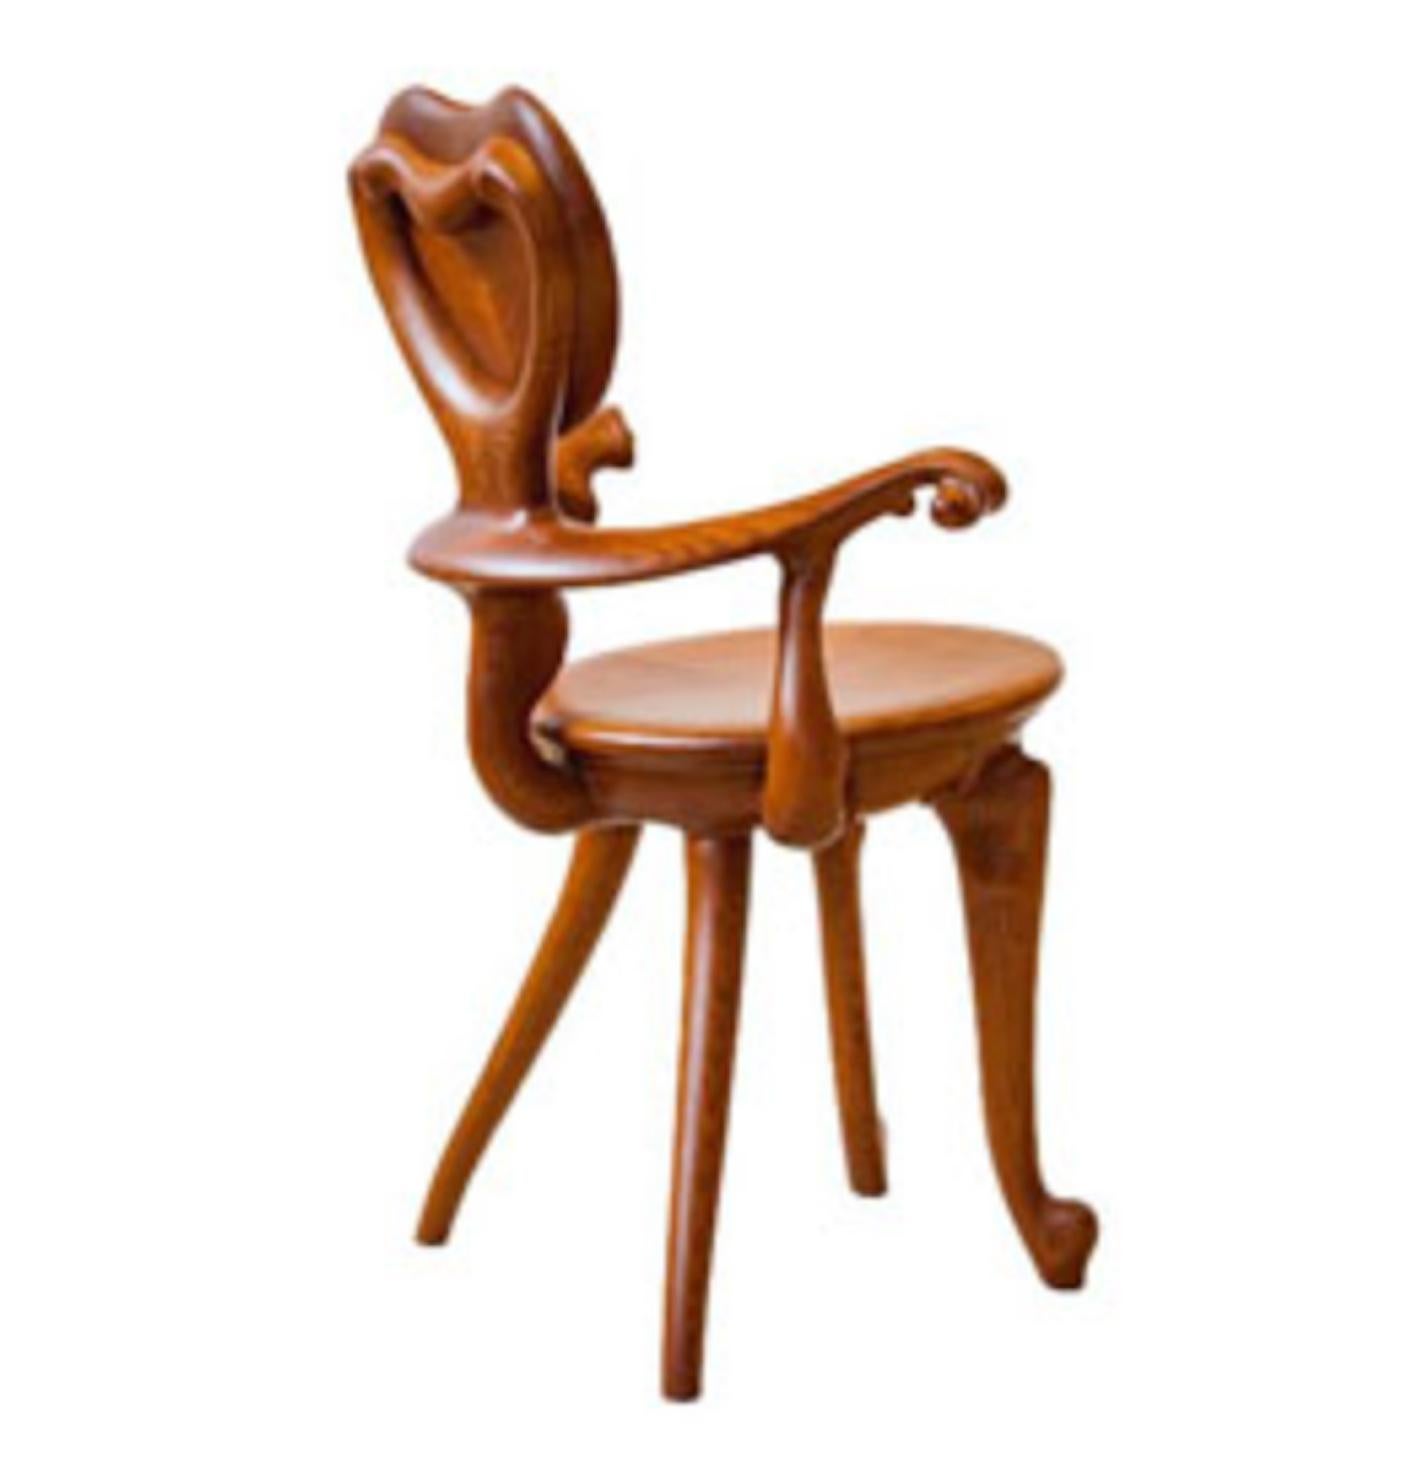 Le fauteuil Calvet est une reproduction exacte du fauteuil que le brillant architecte Antoni Gaudi a conçu en 1902 pour le bureau situé au rez-de-chaussée de la maison Calvet à Barcelone. Aujourd'hui, elle se trouve au musée Gaudi, à l'intérieur du